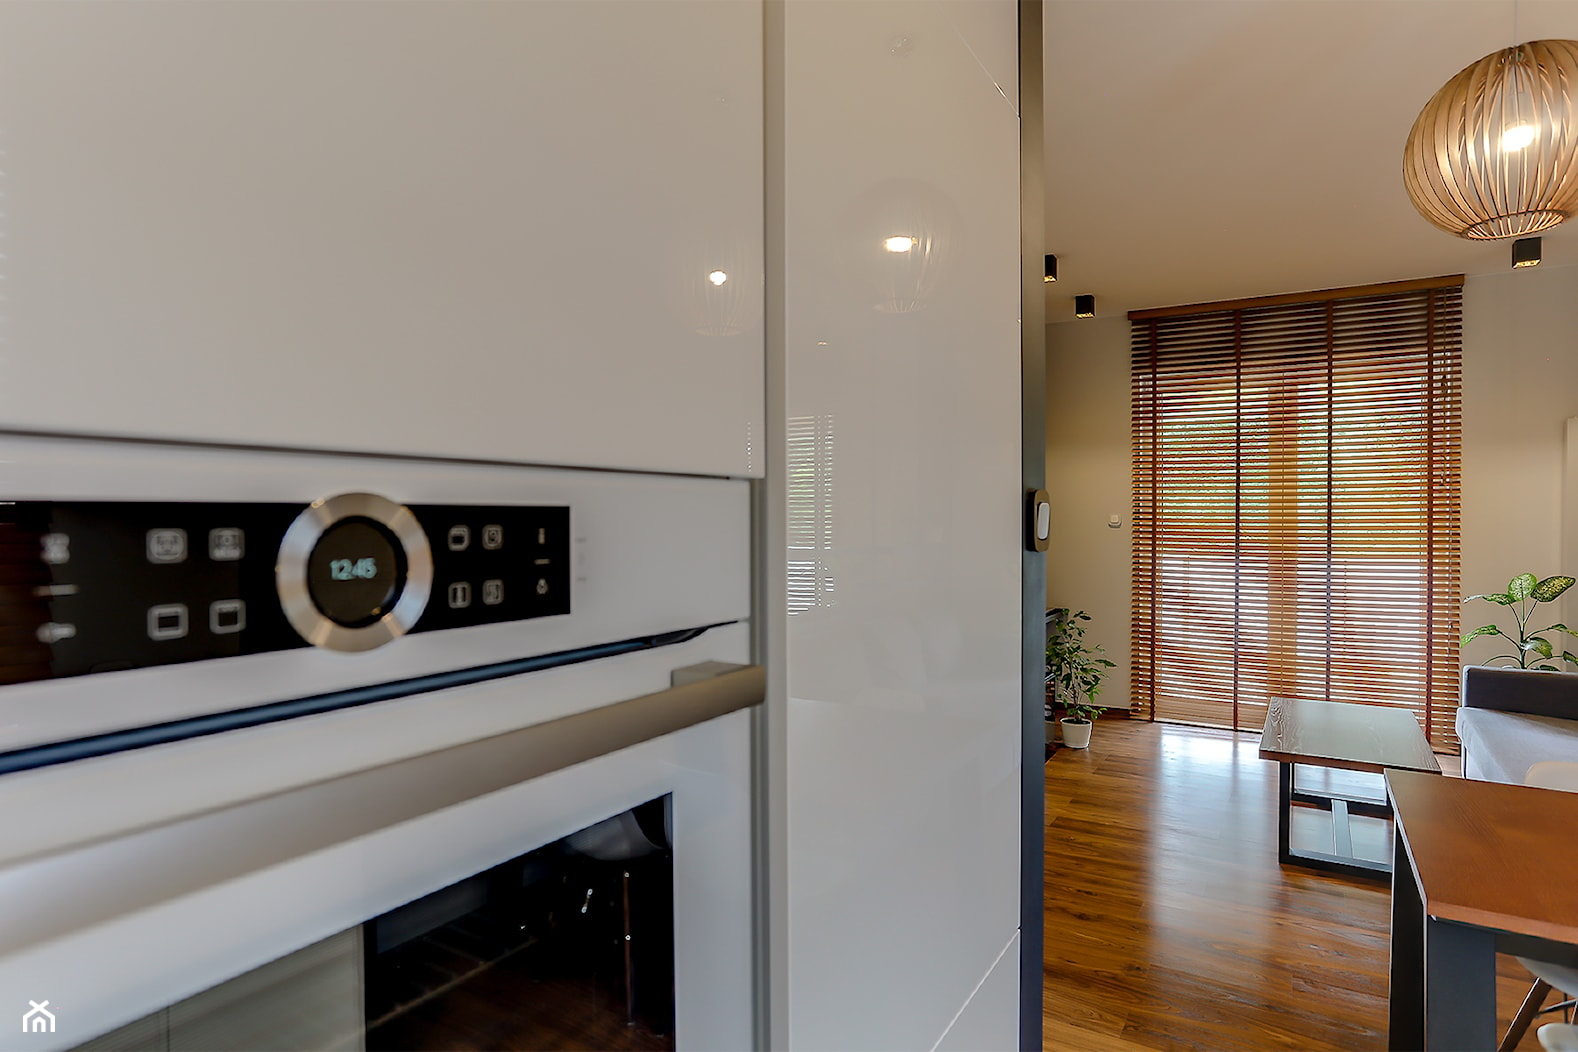 Biała kuchnia w ciepłym minimalistycznym salonie - zdjęcie od Atelier 37 | architektura & projektowanie wnętrz - Homebook